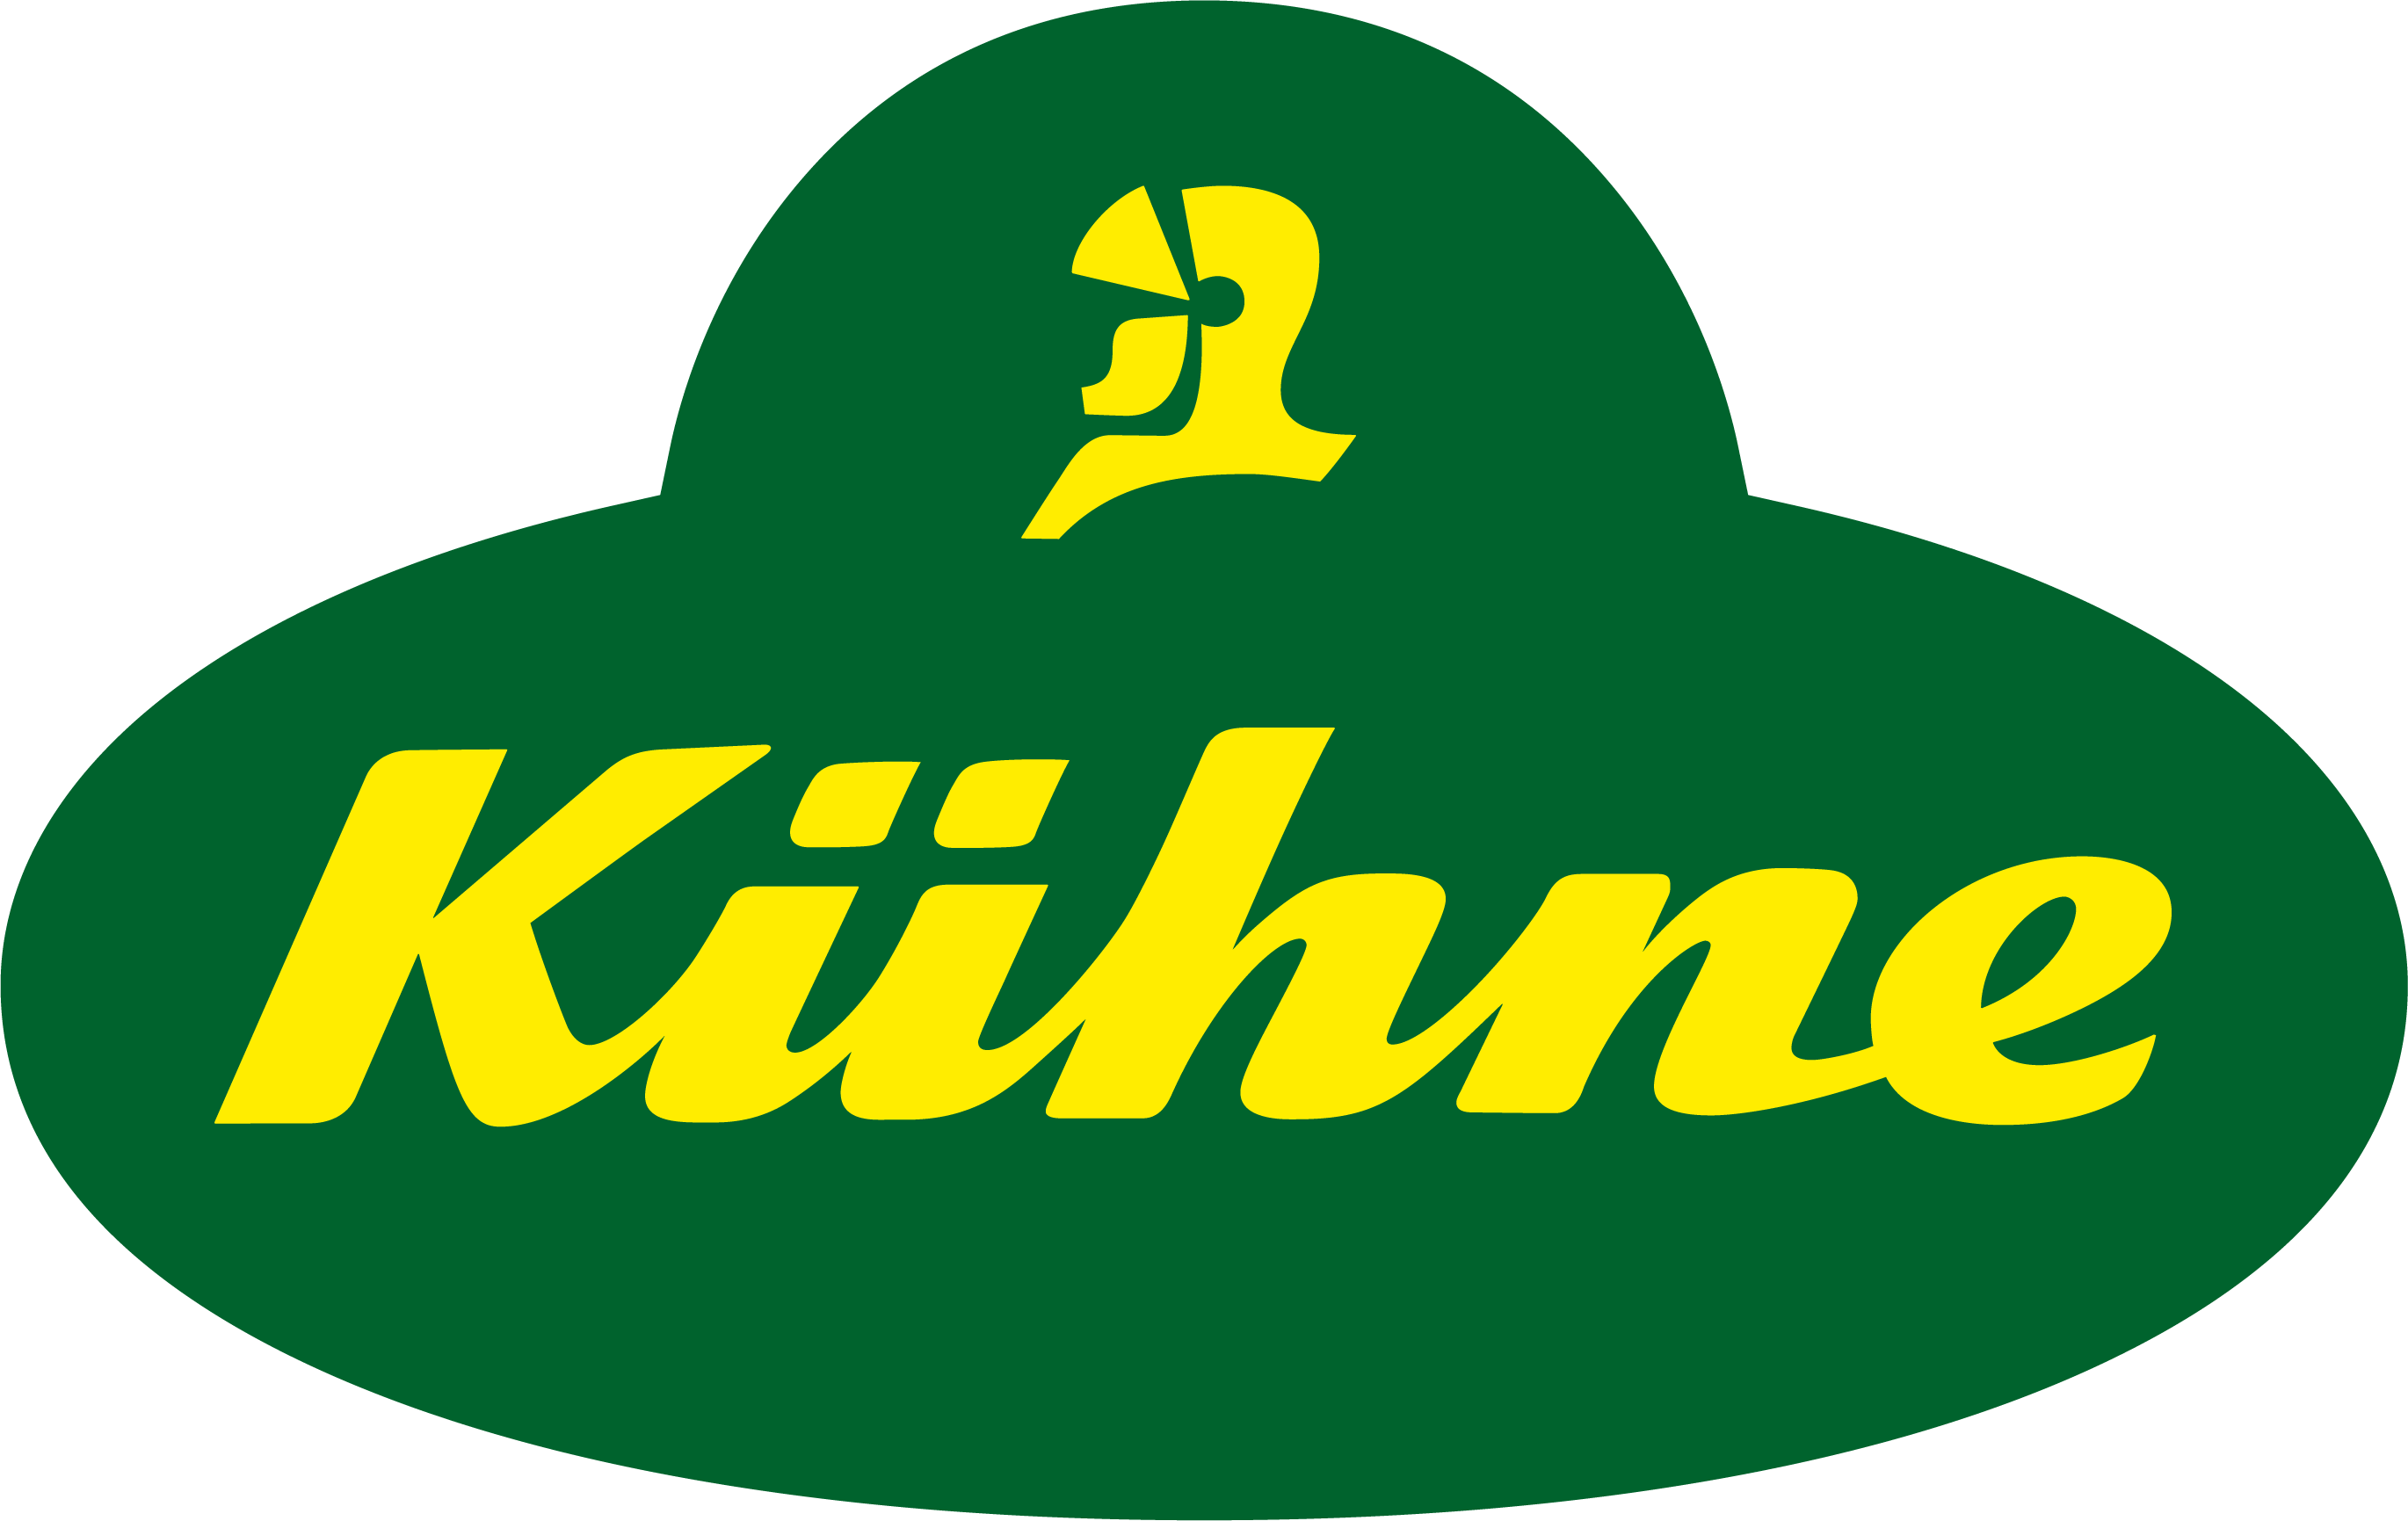 Carl_Kühne_KG_logo